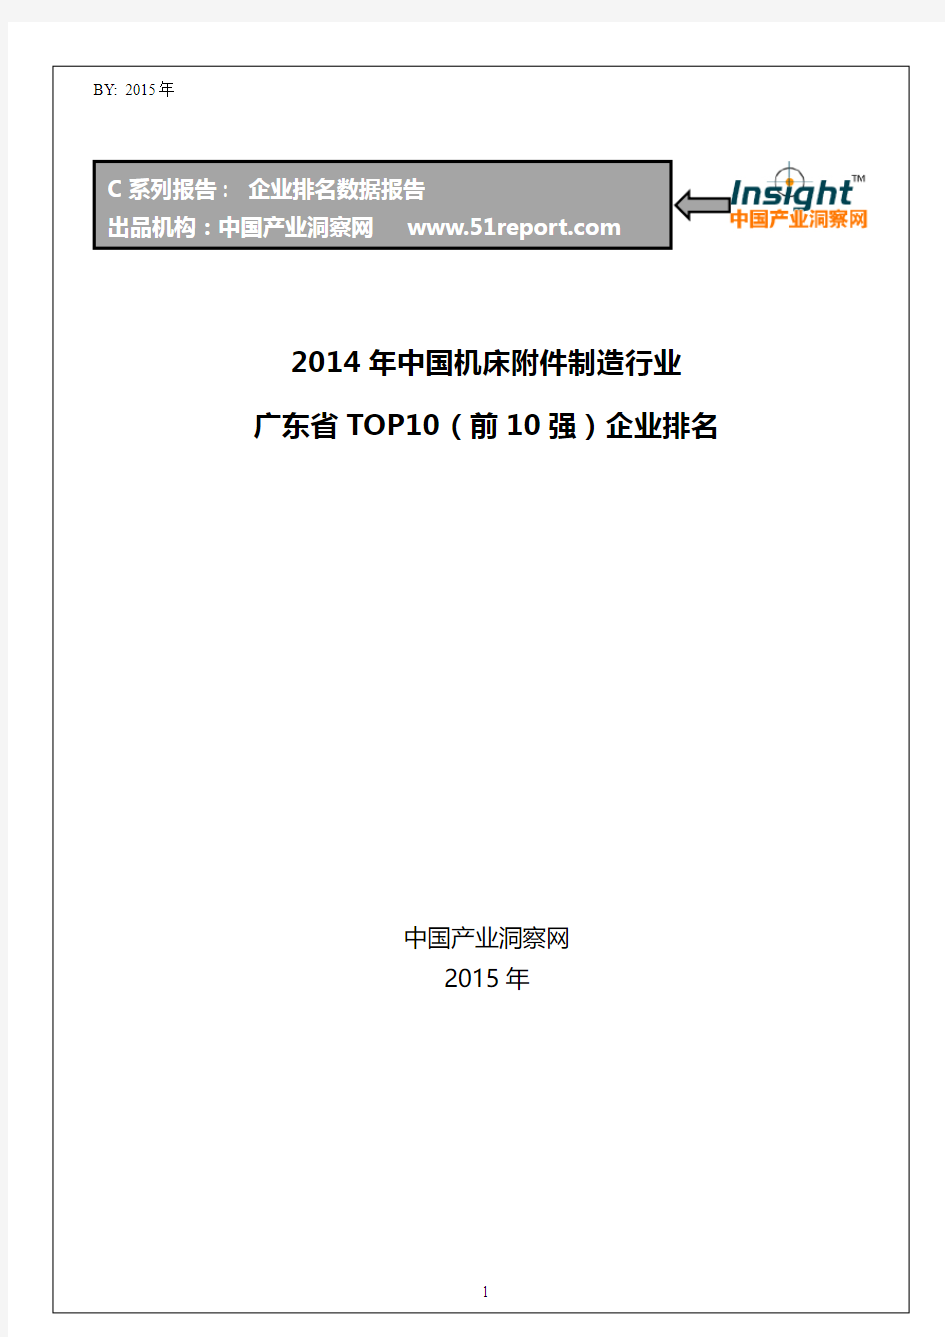 2014年中国机床附件制造行业广东省TOP10企业排名